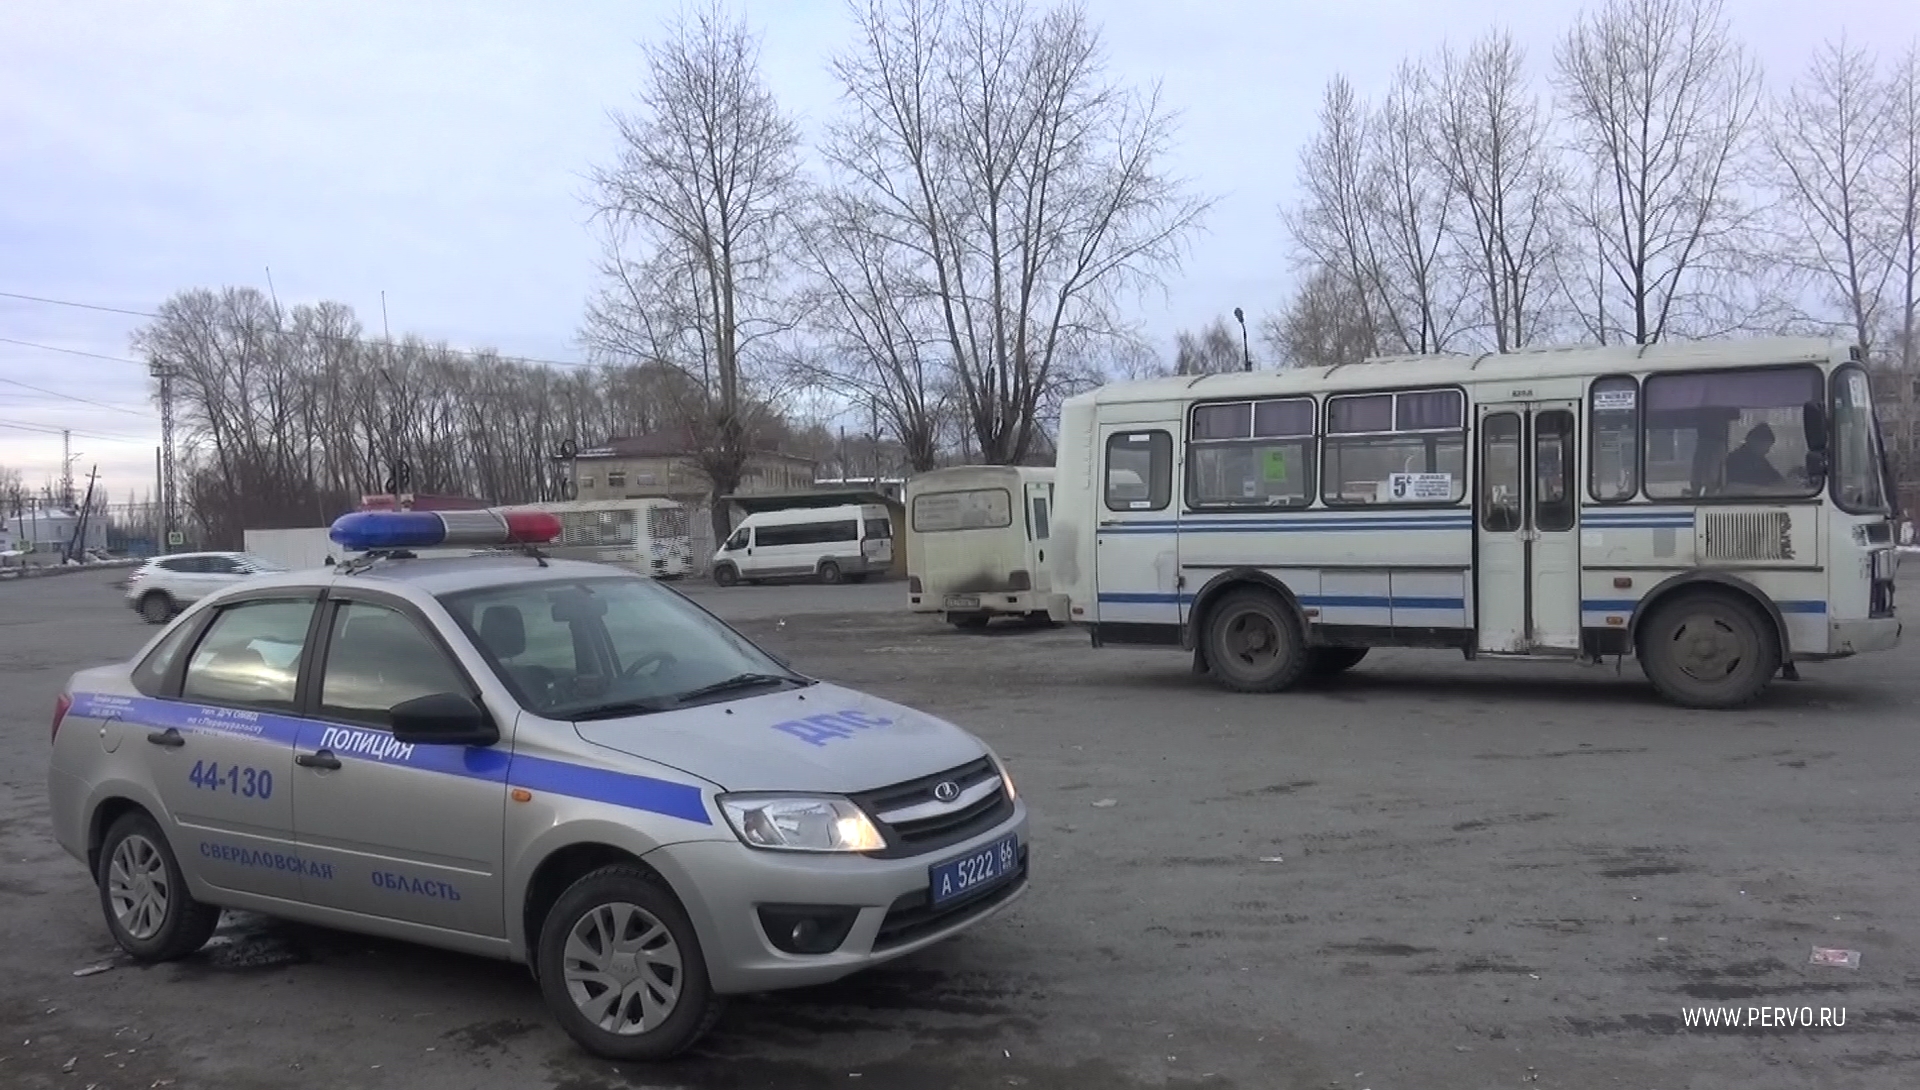 26 нарушений среди водителей автобусов выявлено в Первоуральске